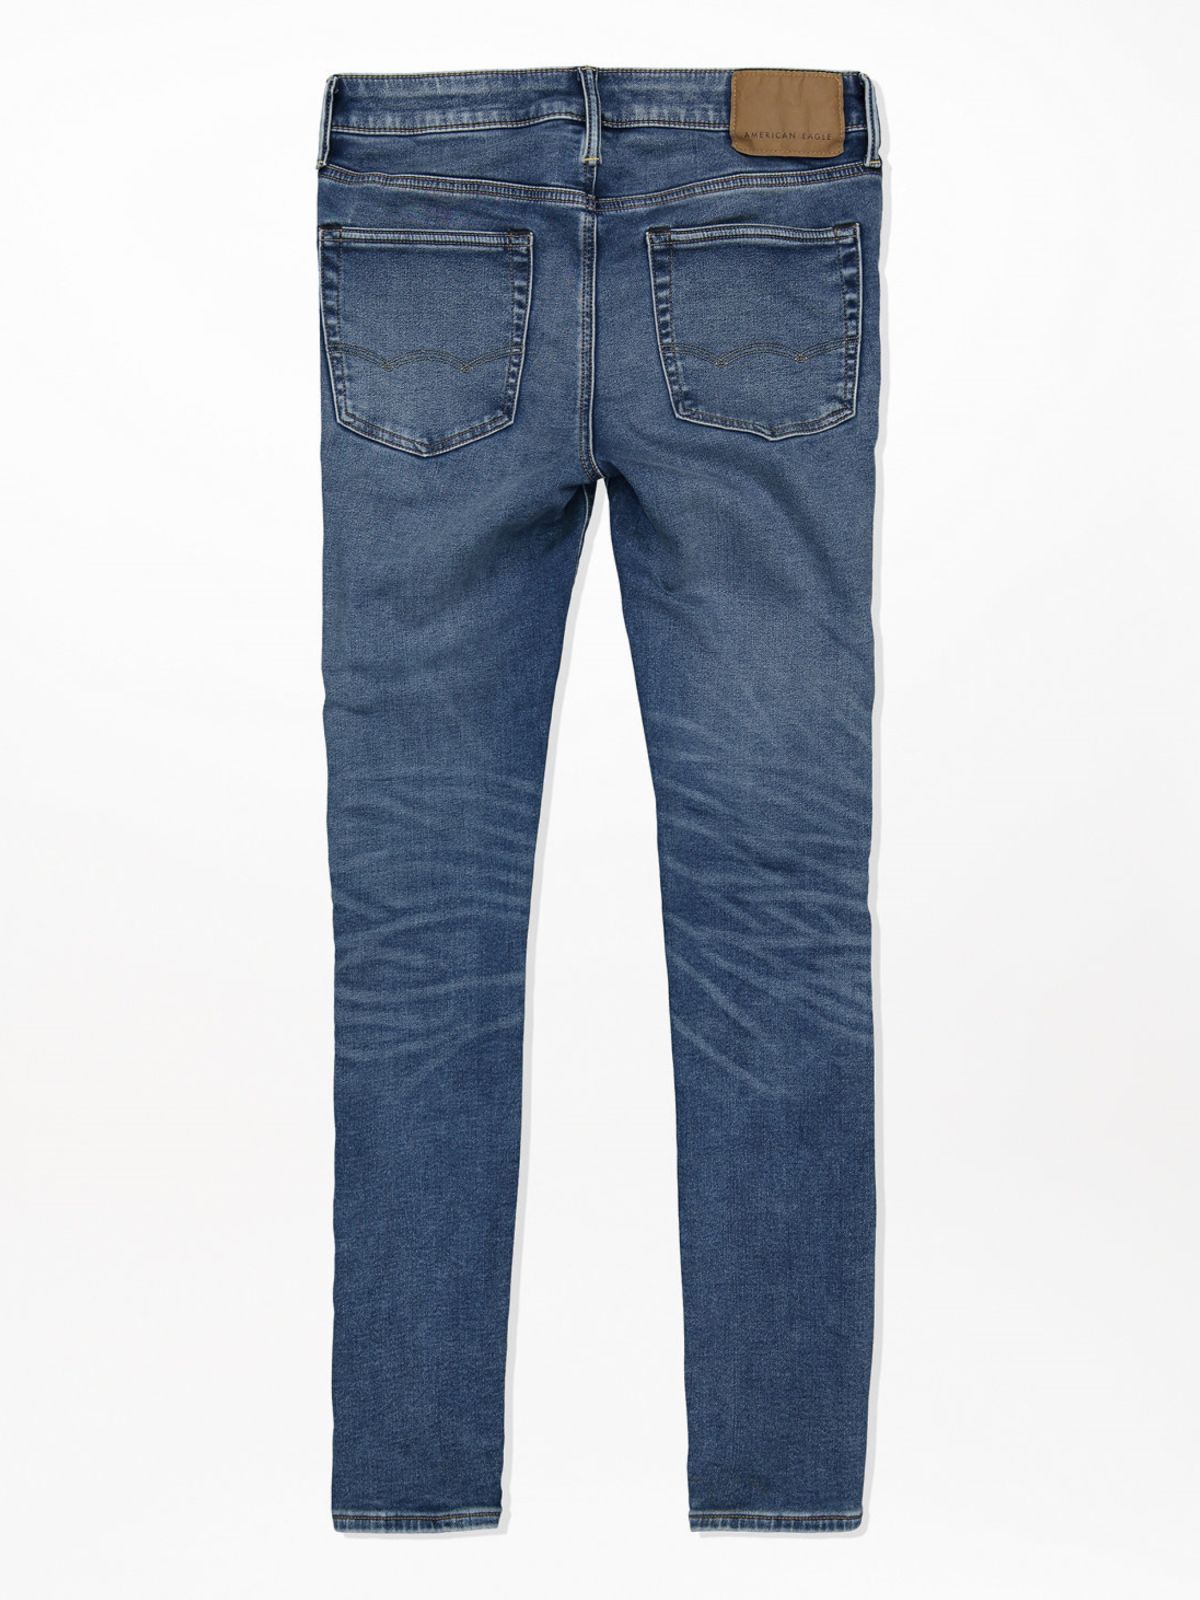  ג'ינס ארוך ווש בגזרת SLIM של AMERICAN EAGLE